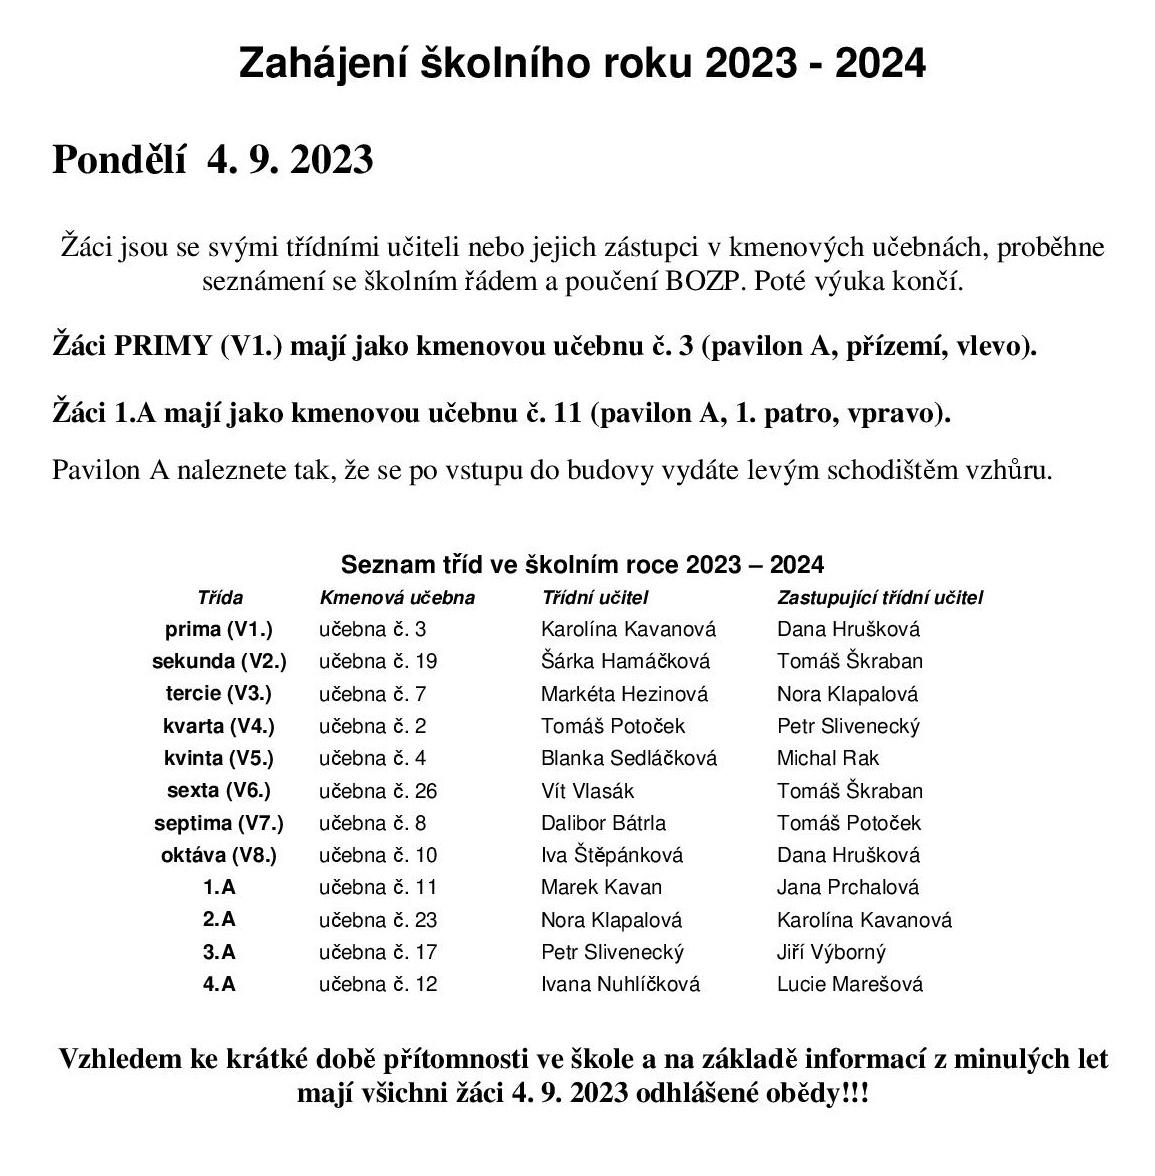 Zahájení školního roku 2023-2024